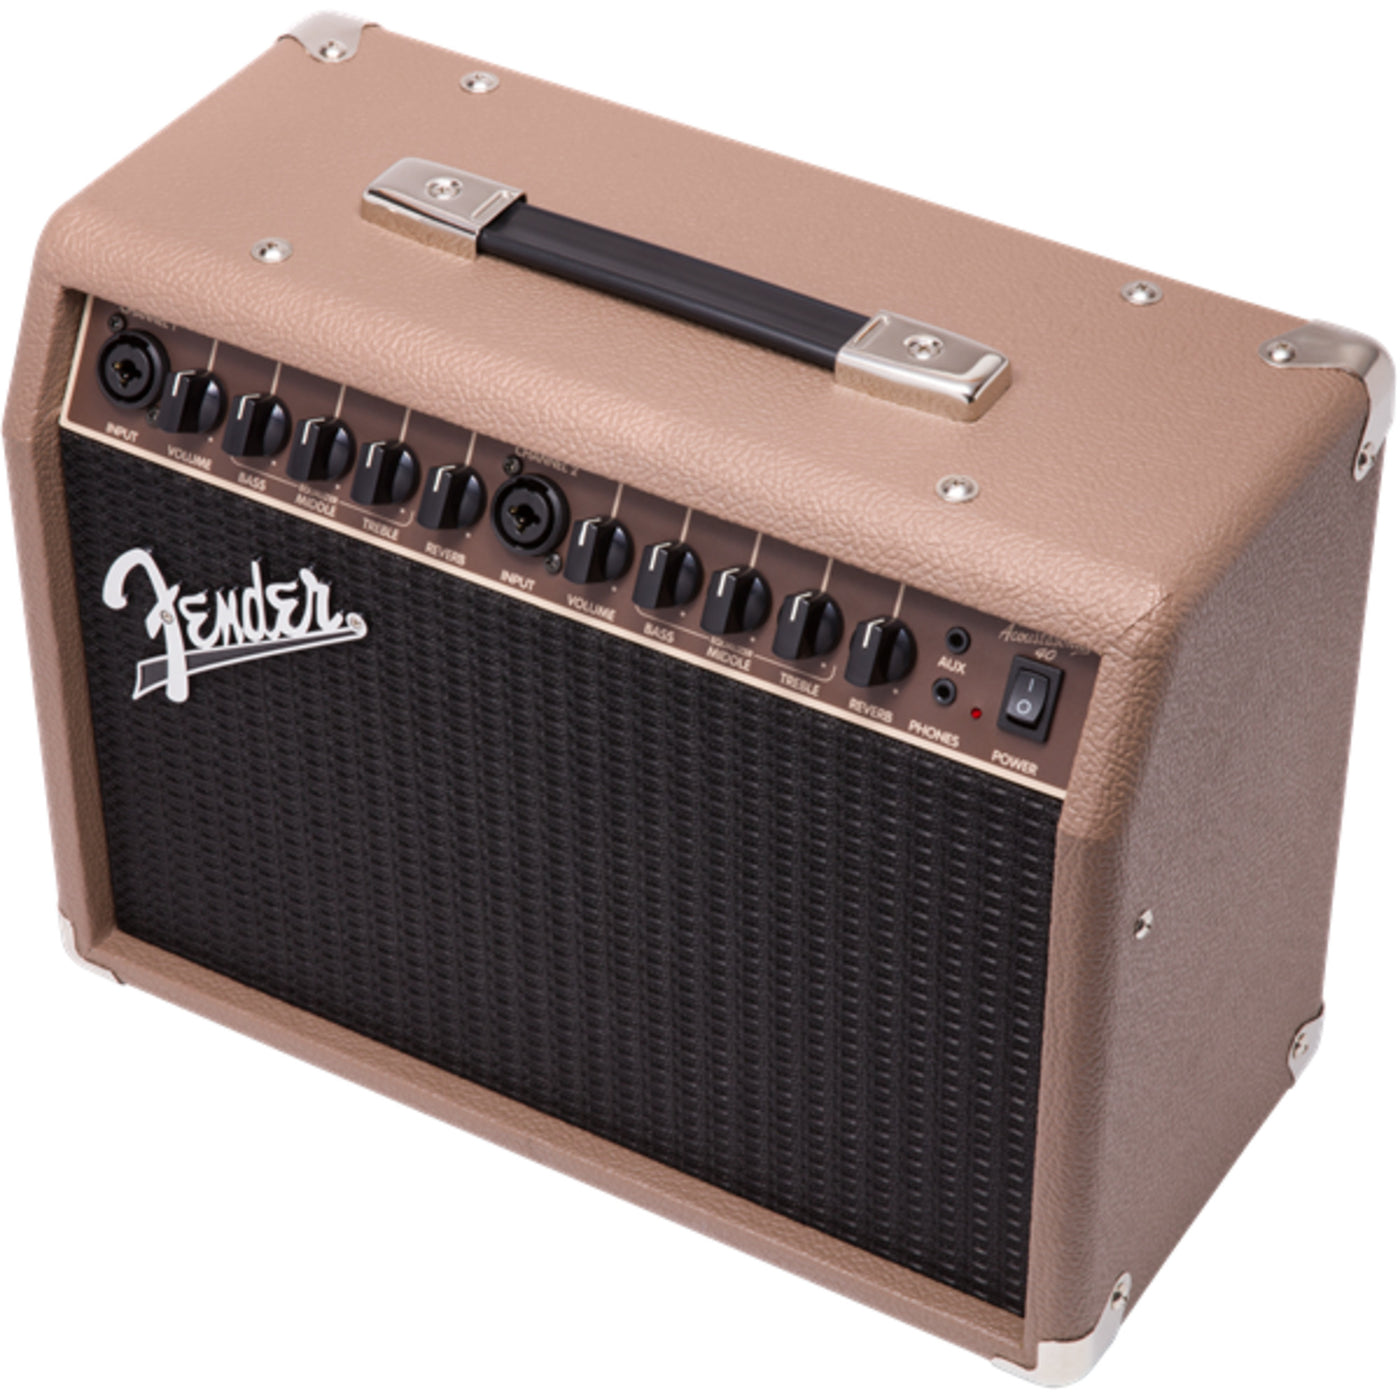 Fender Acoustasonic 40 Amplifier, 120V (2314200000)